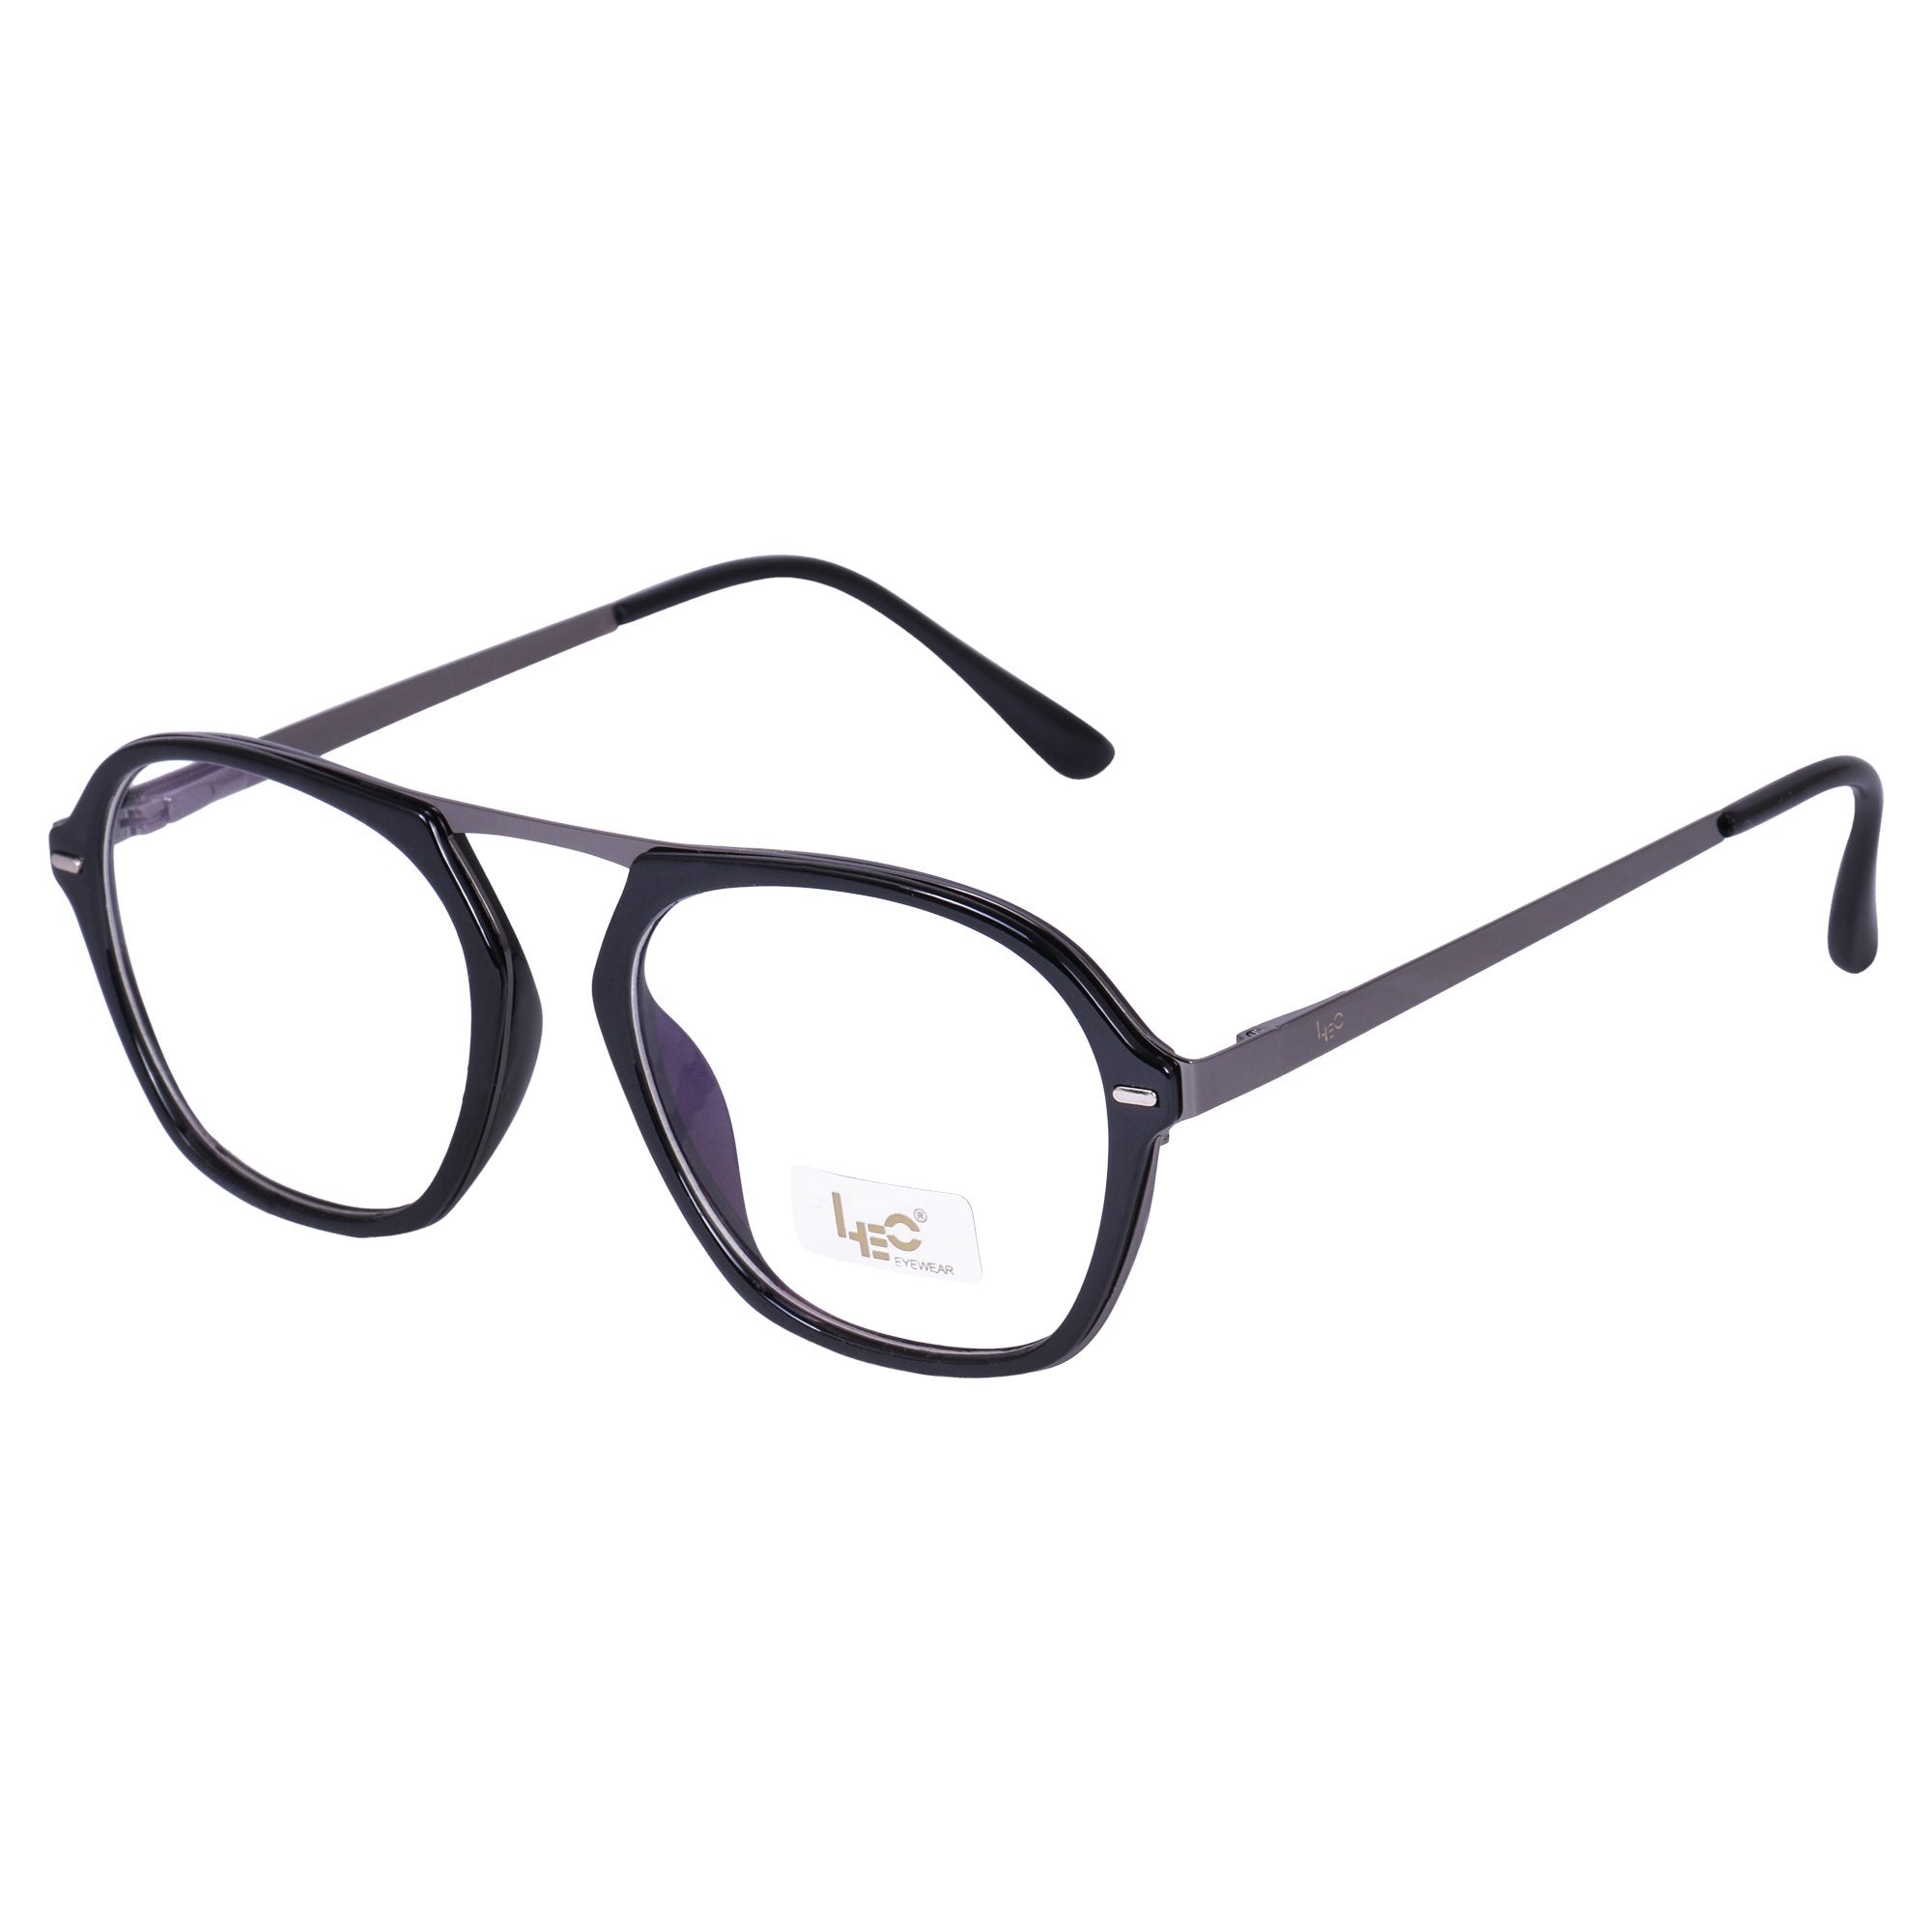 Black Square Rimmed Eyeglasses - L2846